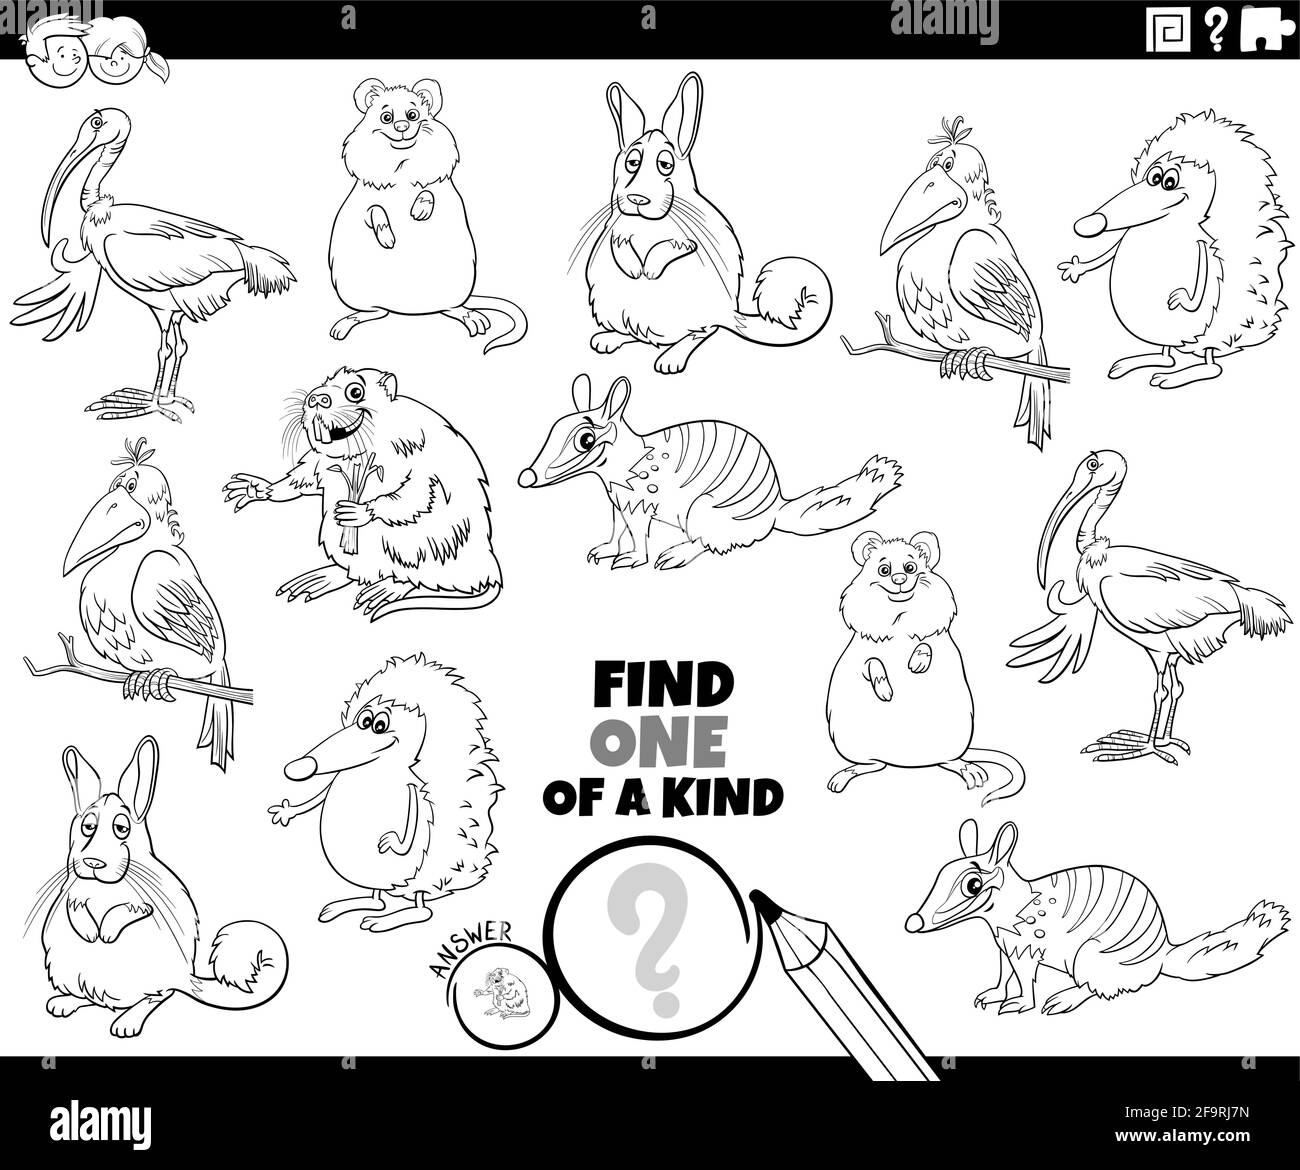 Illustrazione cartoon in bianco e nero di Find One of A. genere gioco educativo dell'immagine con libro divertente dei caratteri dell'animale da colorare pagina Illustrazione Vettoriale